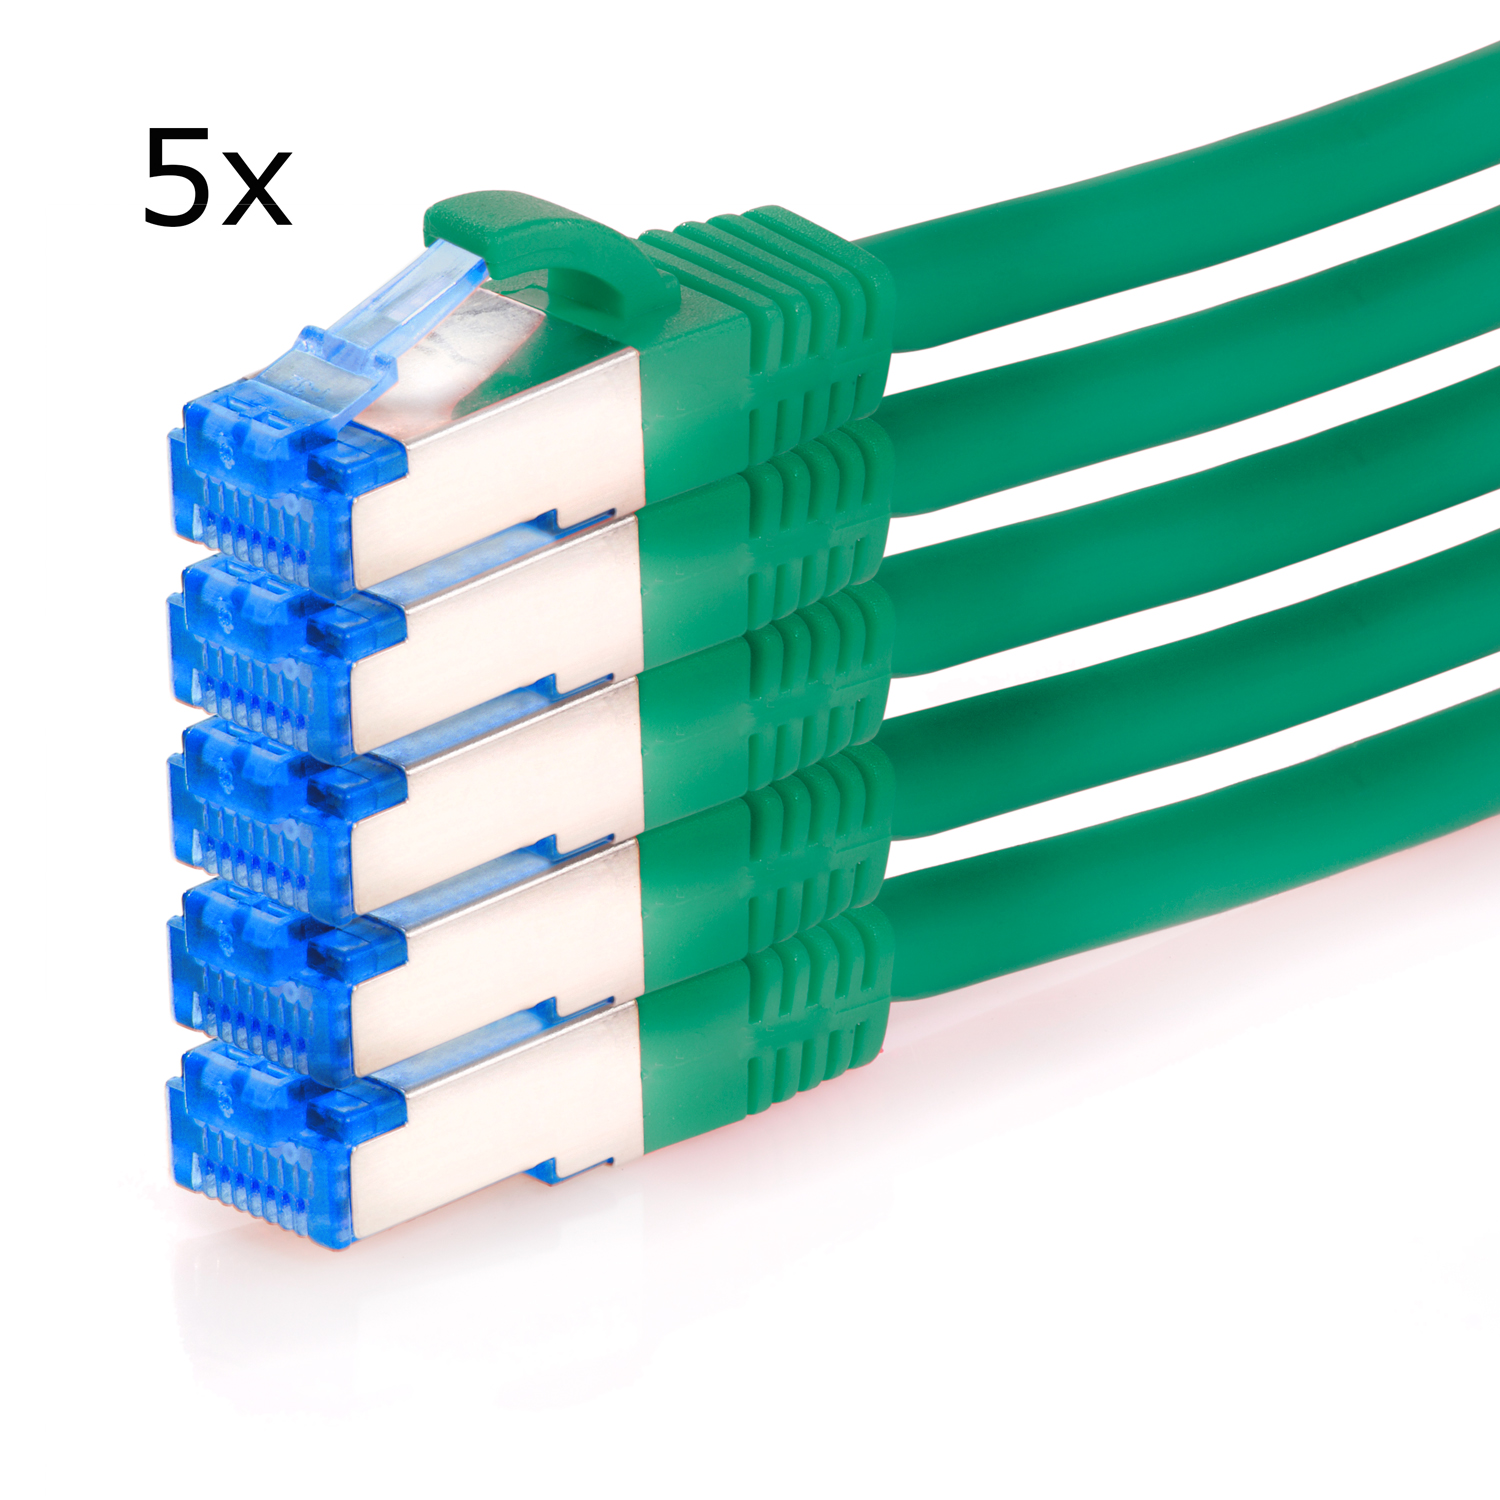 TPFNET 5er Pack 7,5m Patchkabel S/FTP m 7,5 10GBit, Netzwerkkabel Netzwerkkabel, grün, 